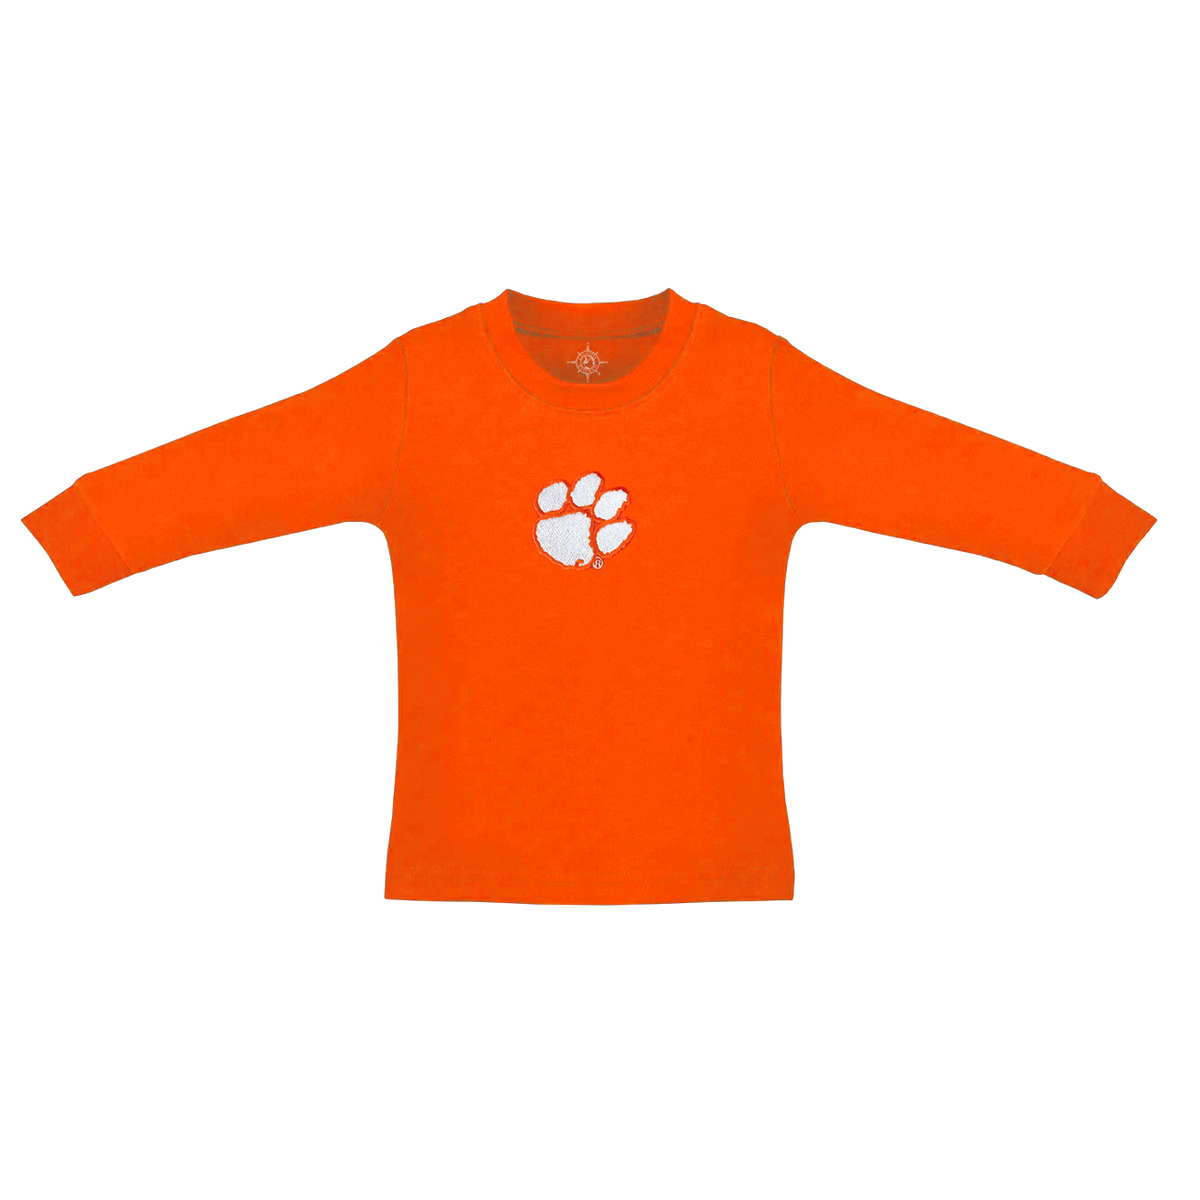 Clemson Orange Long Sleeve Infant Shirt with Paw